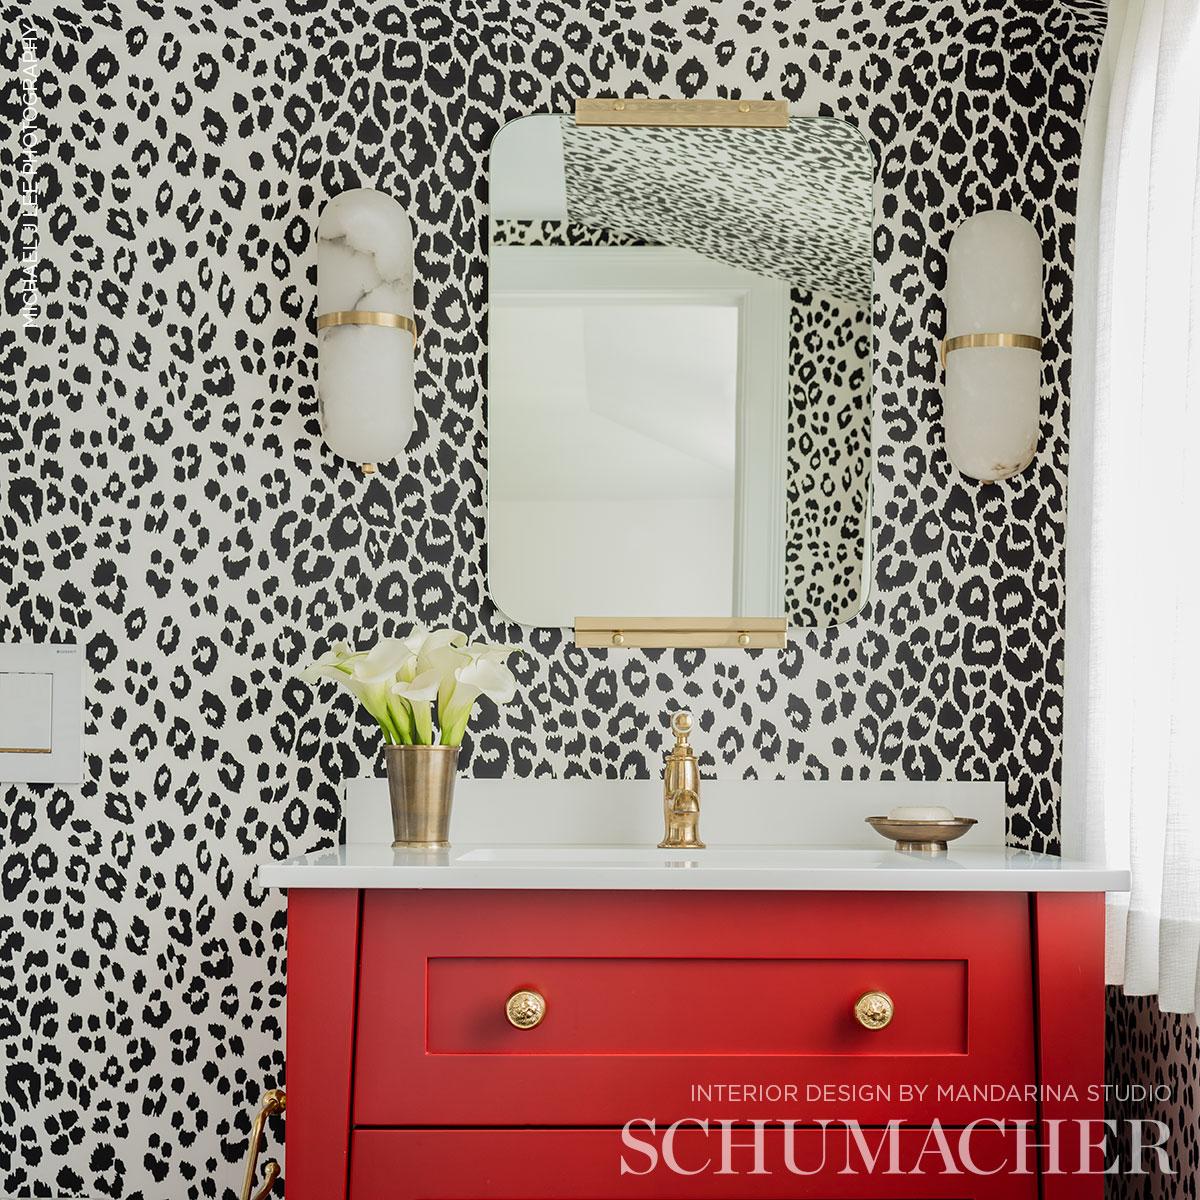 Schumacher 5007012 Iconic Leopard Graphite Wallpaper